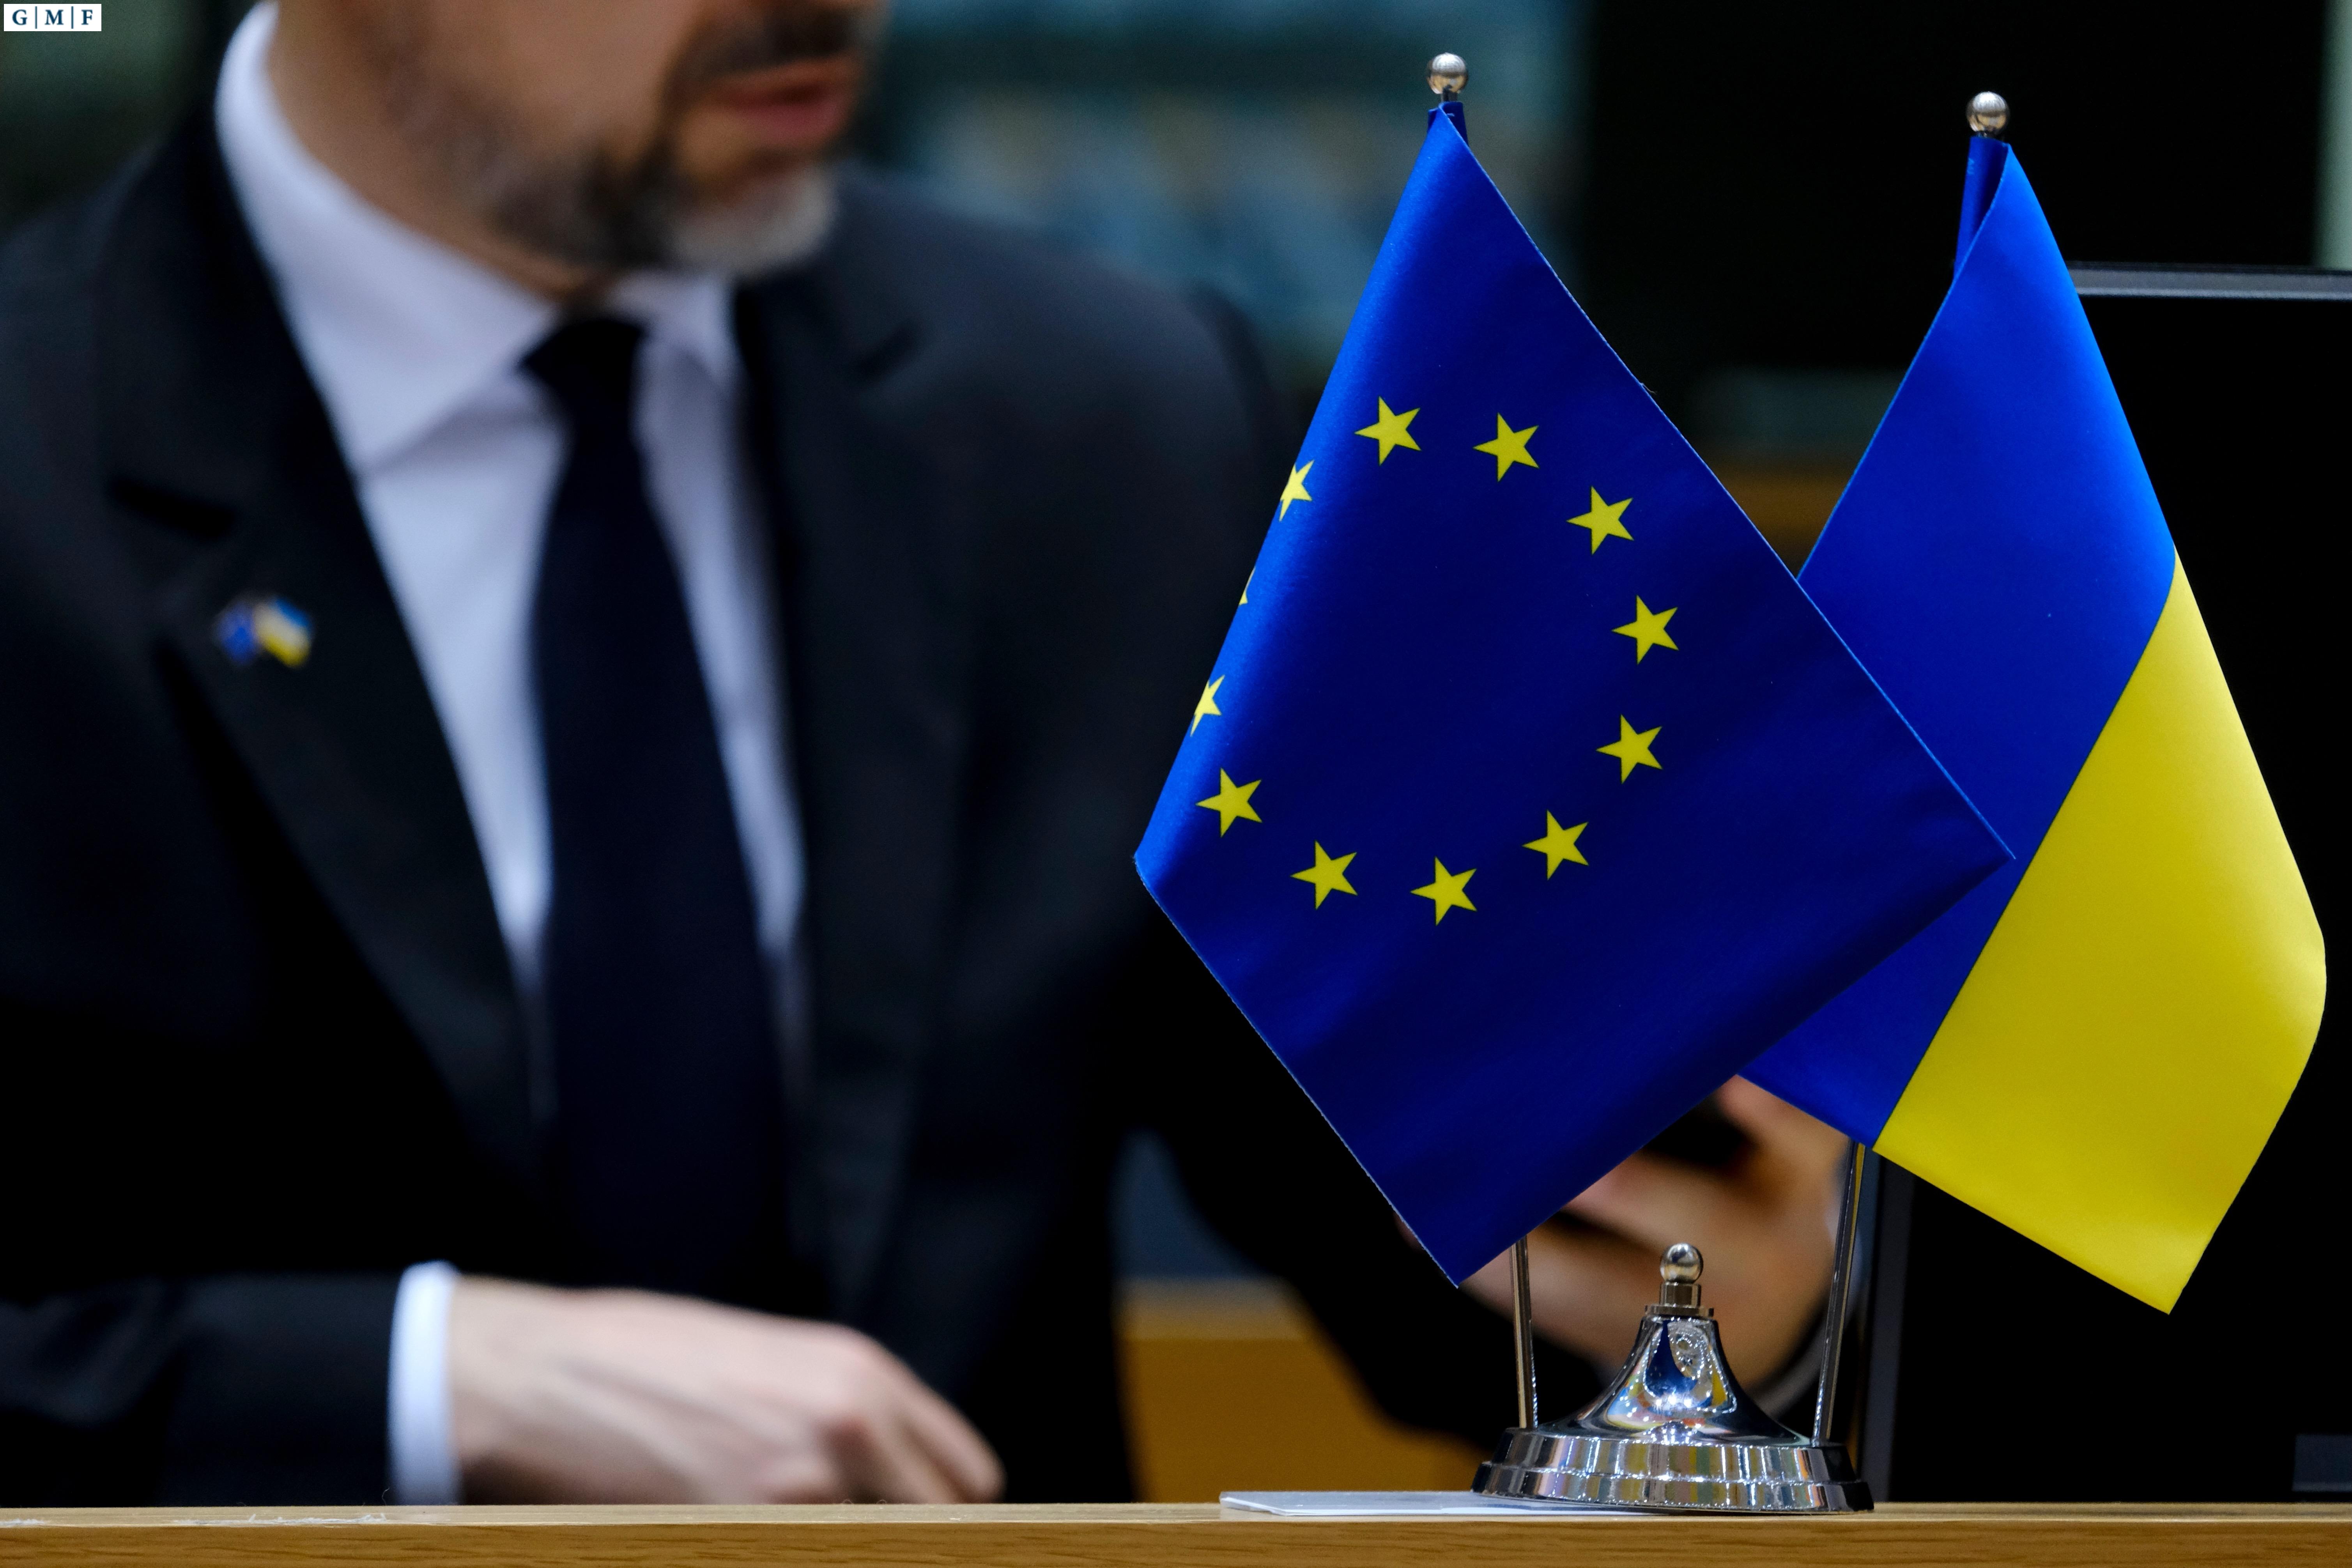 Príspevky Európy Ukrajine odhaľujú dôveryhodné partnerstvo so Spojenými štátmi